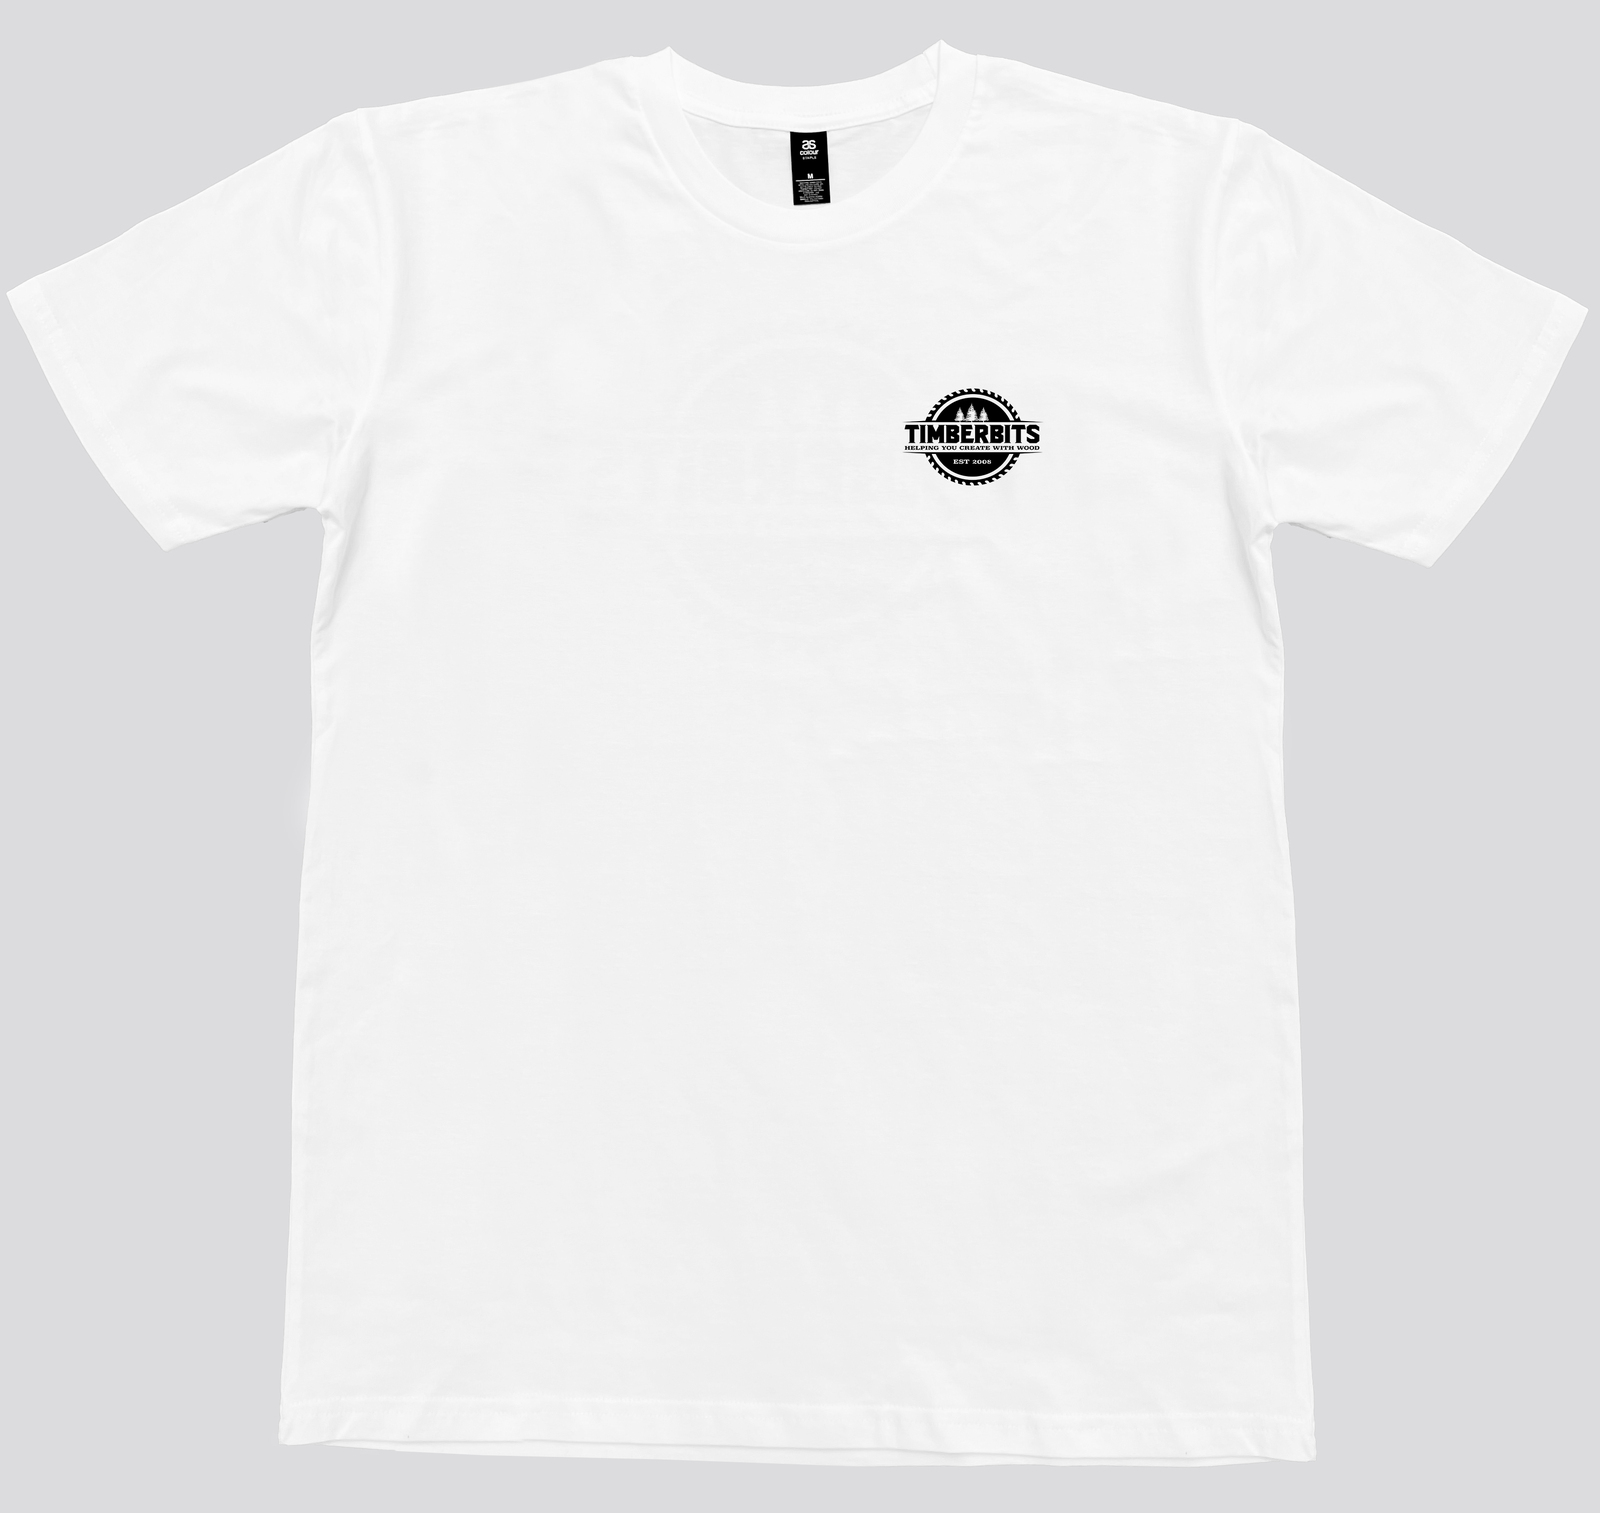 Timberbits T-Shirt - White (S)